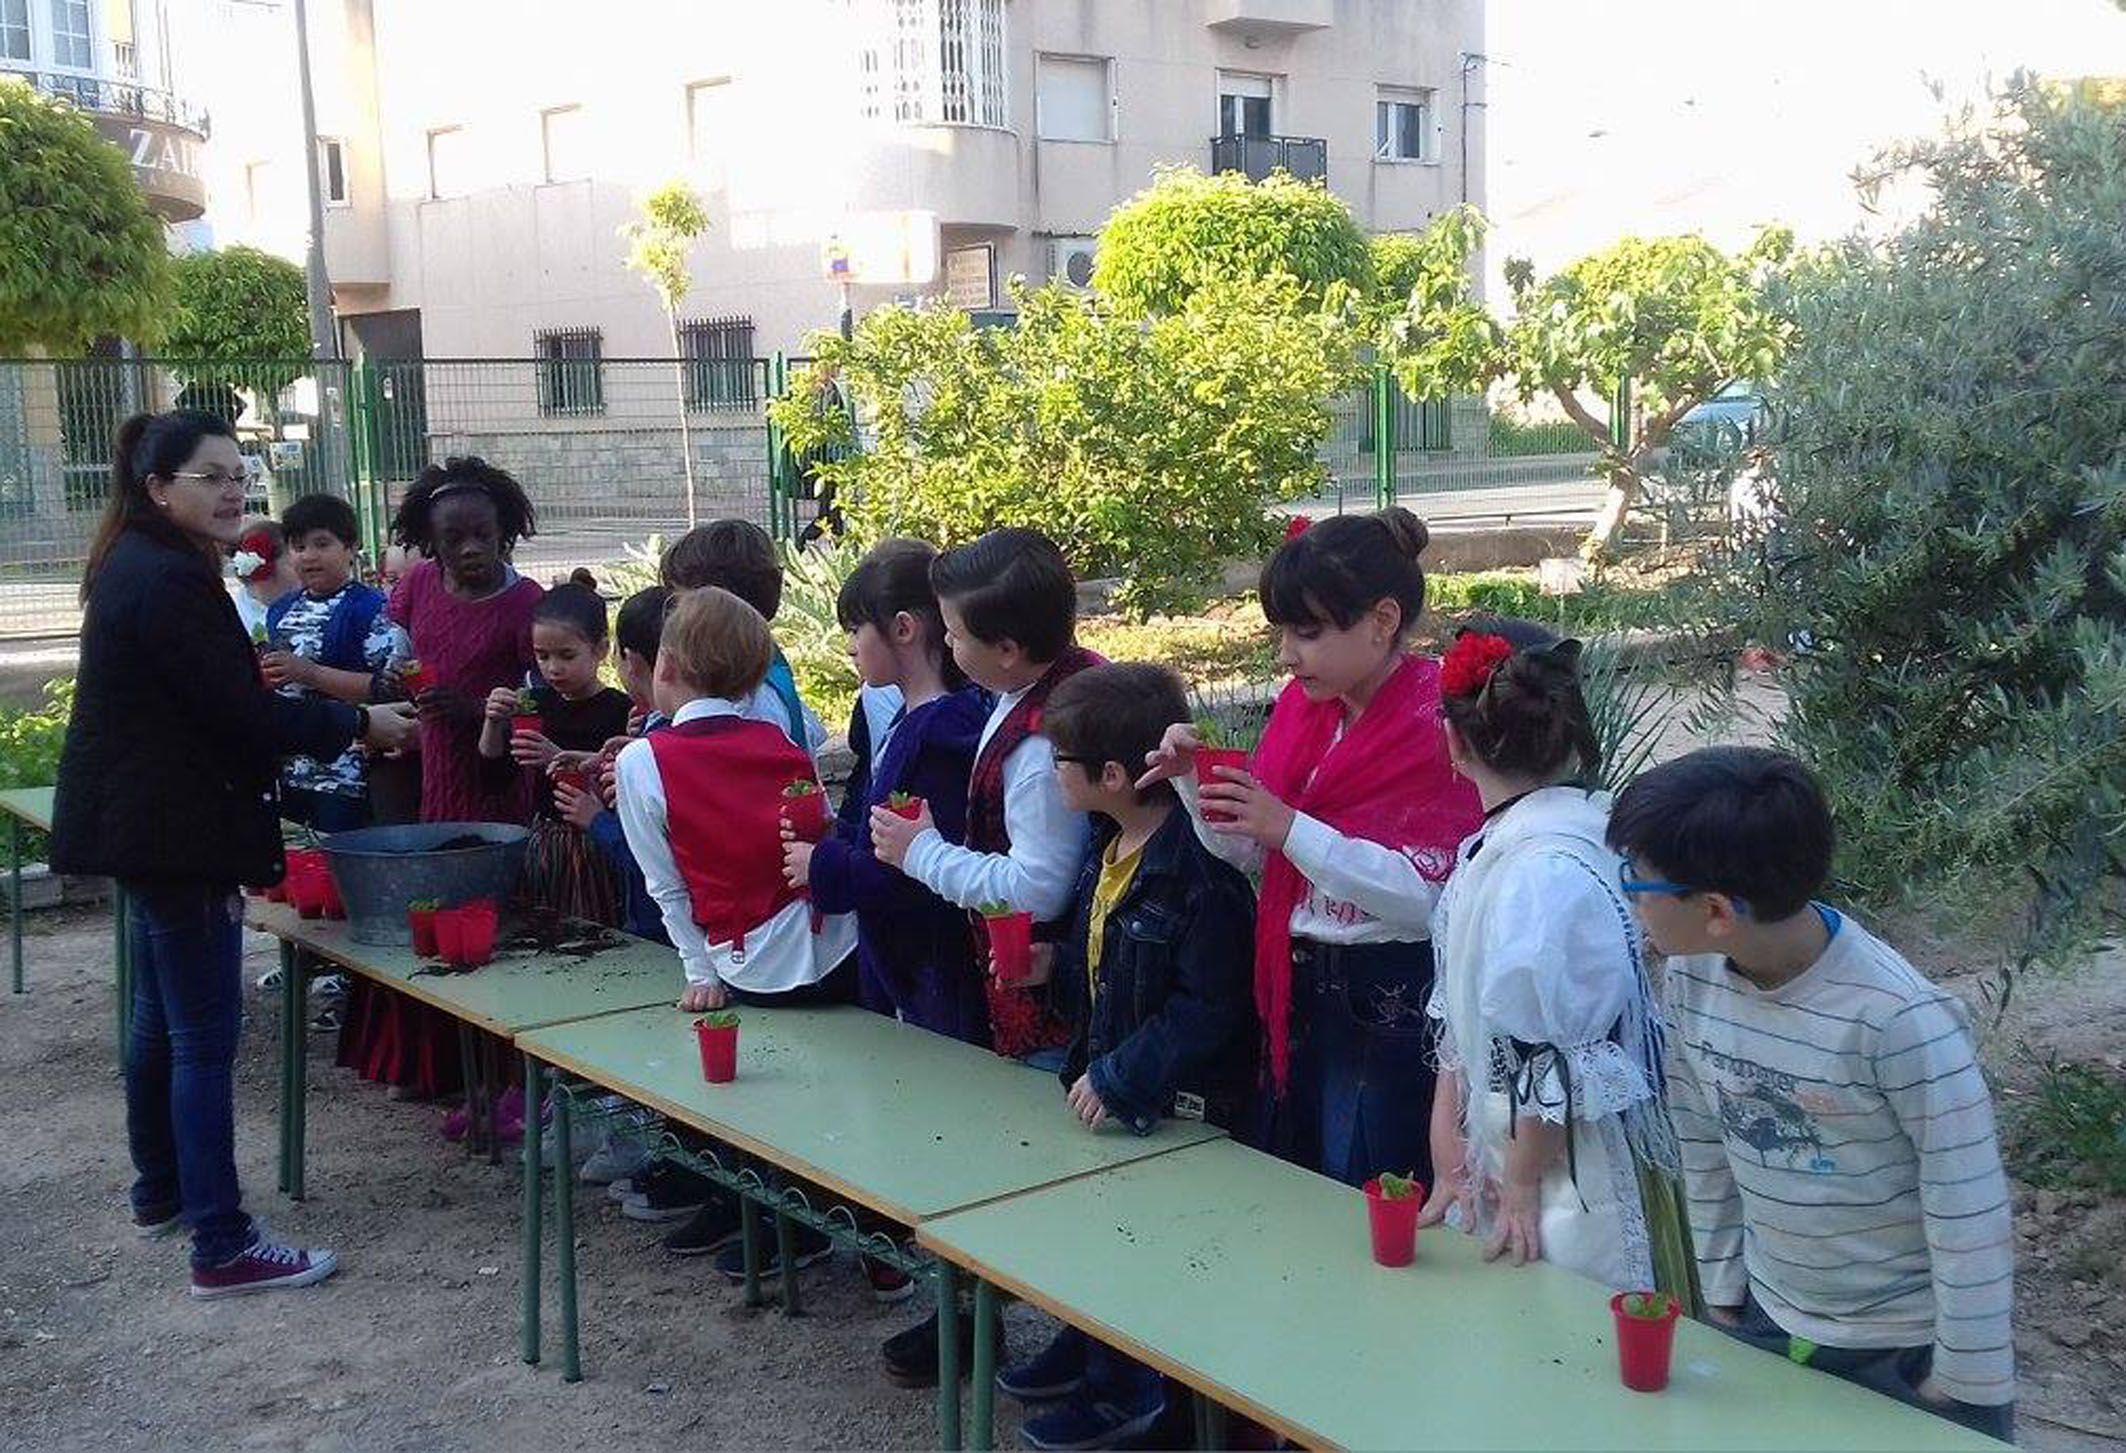 Los alumnos del colegio ‘El Parque’ se educan en la tradición de la huerta murciana4